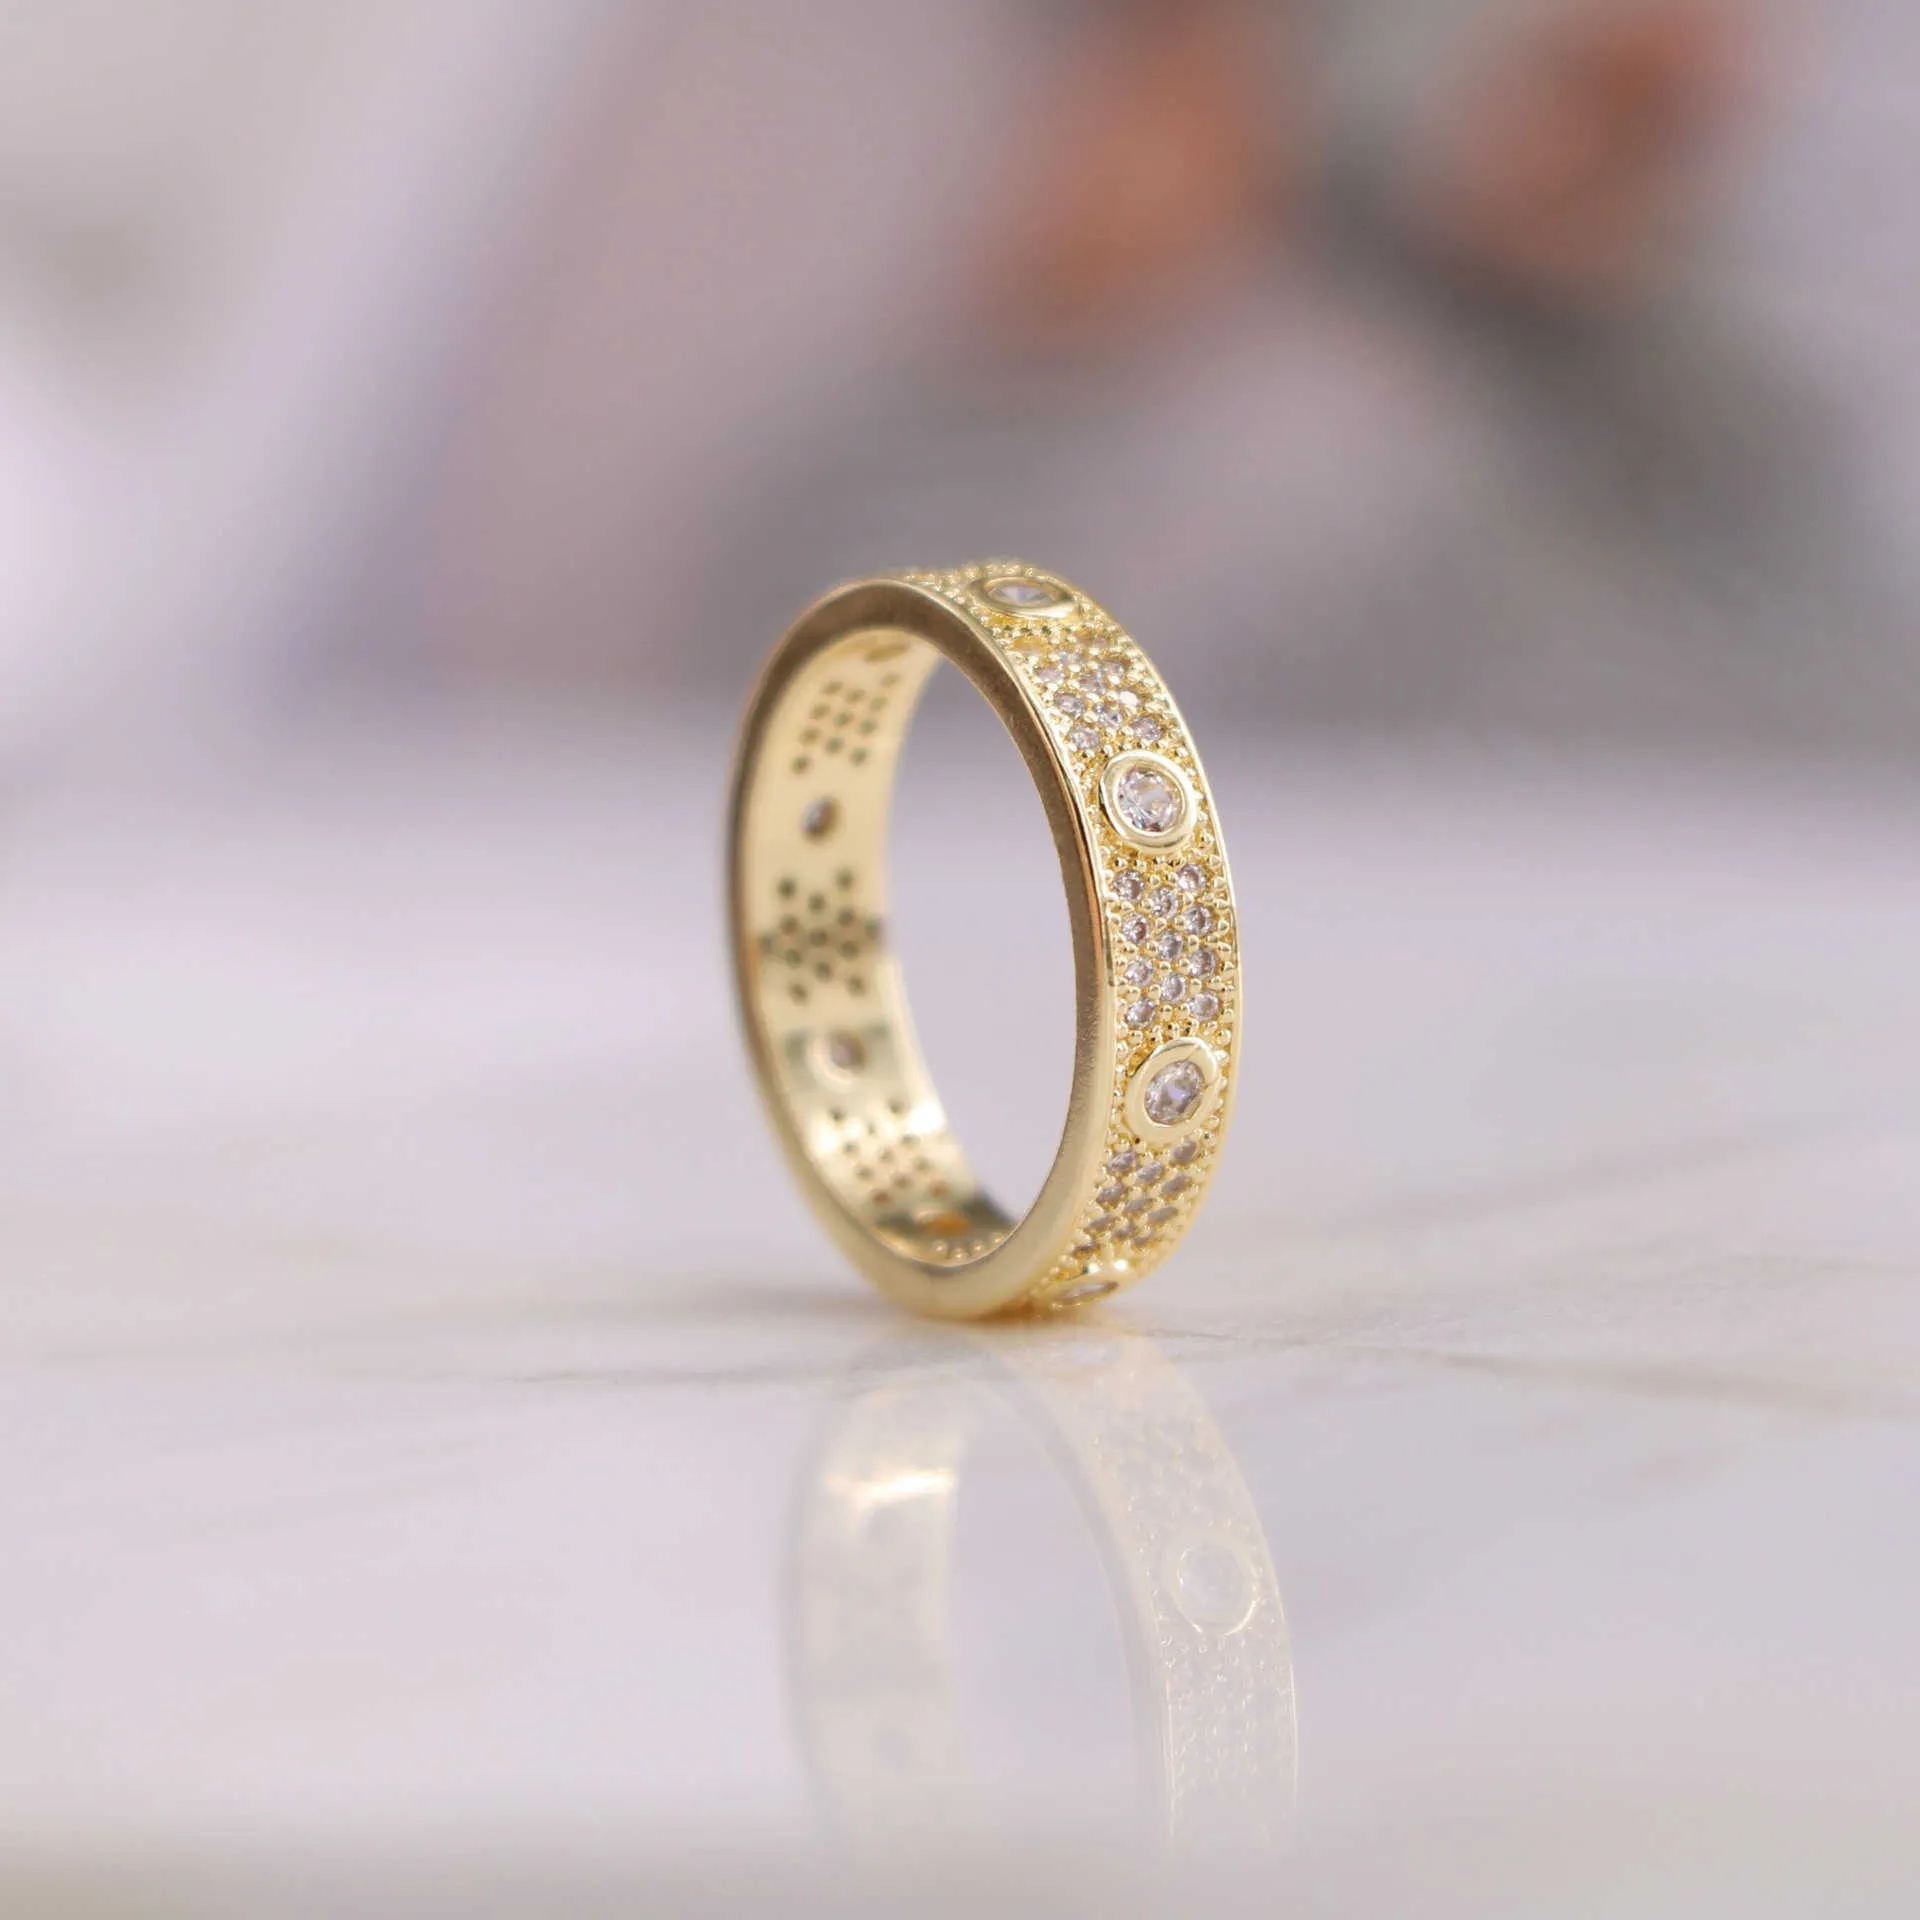 Designer Charm Display Carterlassic Diamond Star Universal Ring für Männer und Frauen